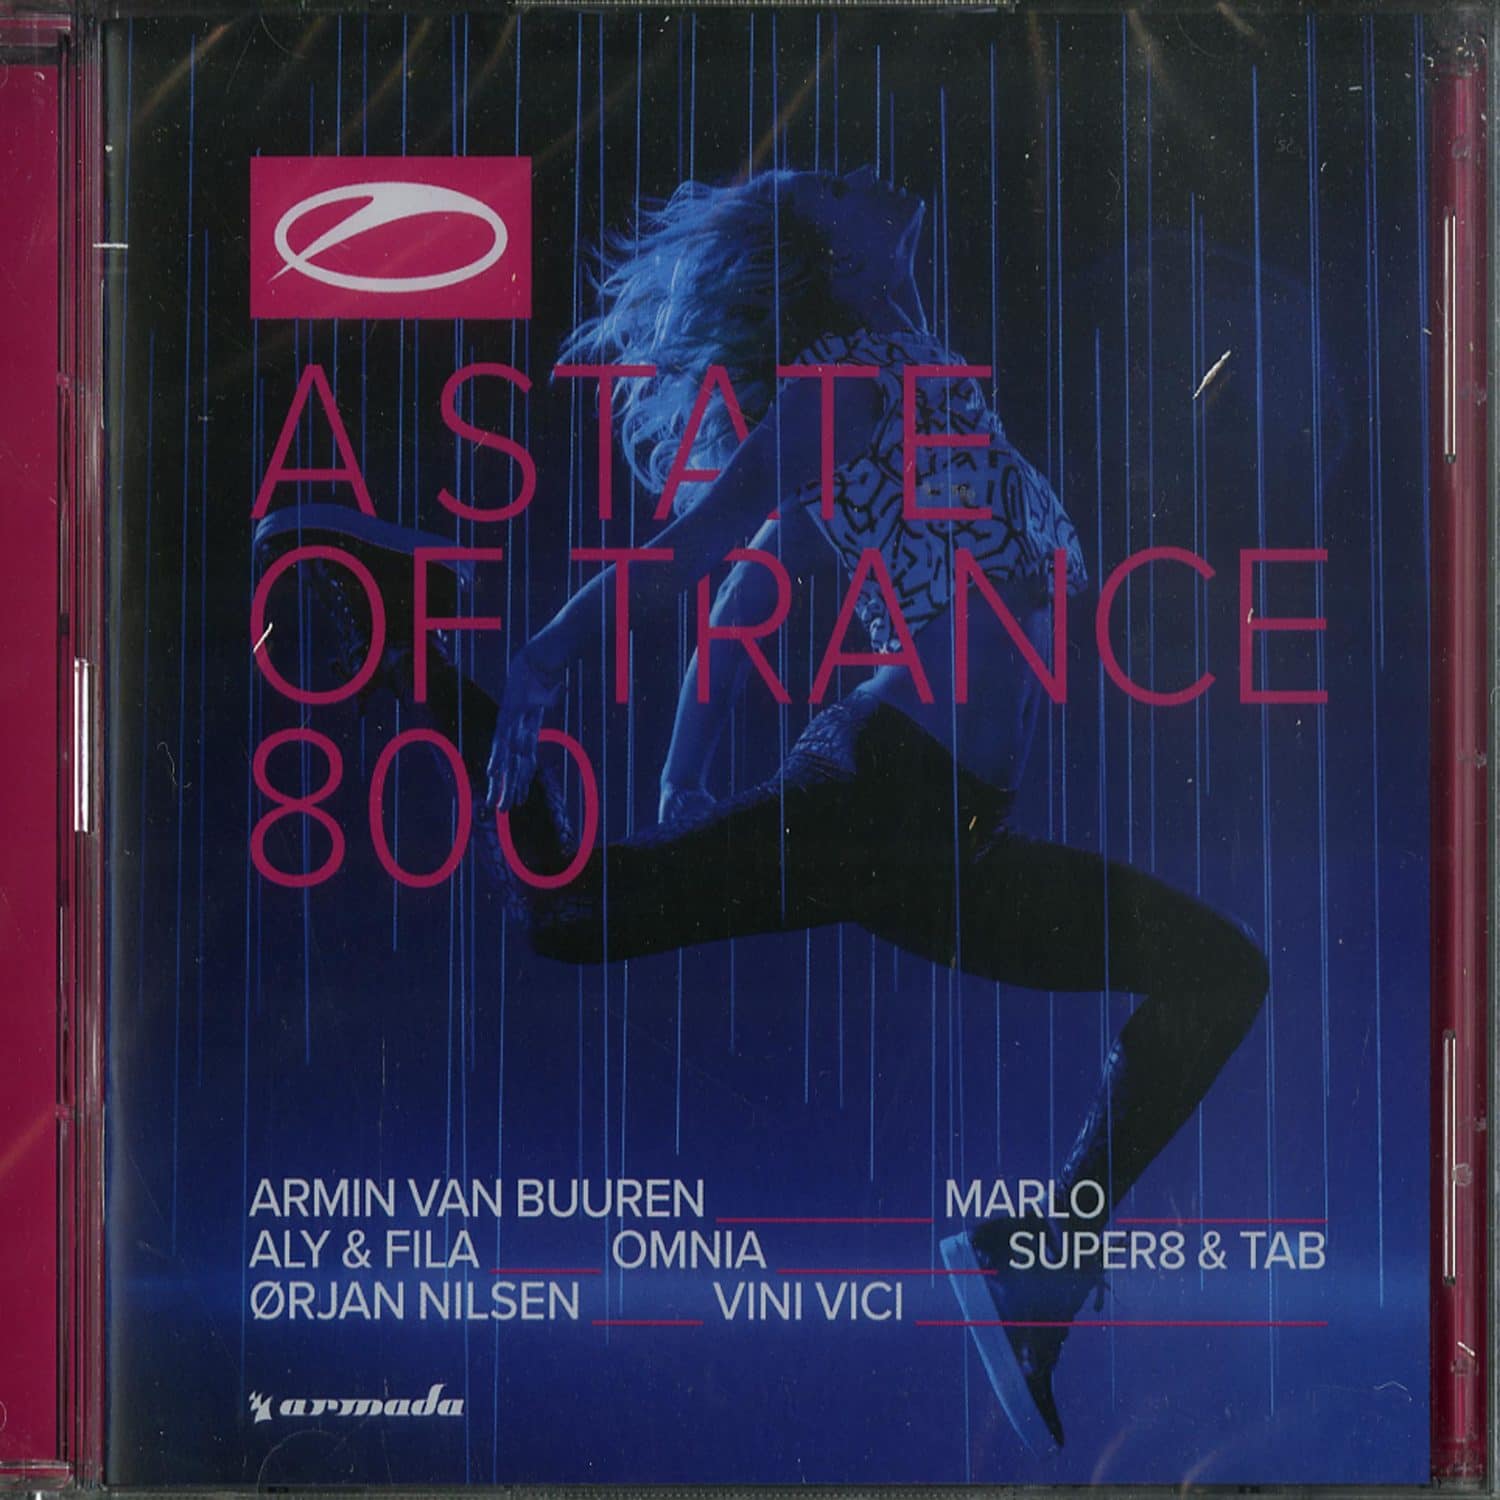 Armin Van Buuren & Friends - A STATE OF TRANCE 800 